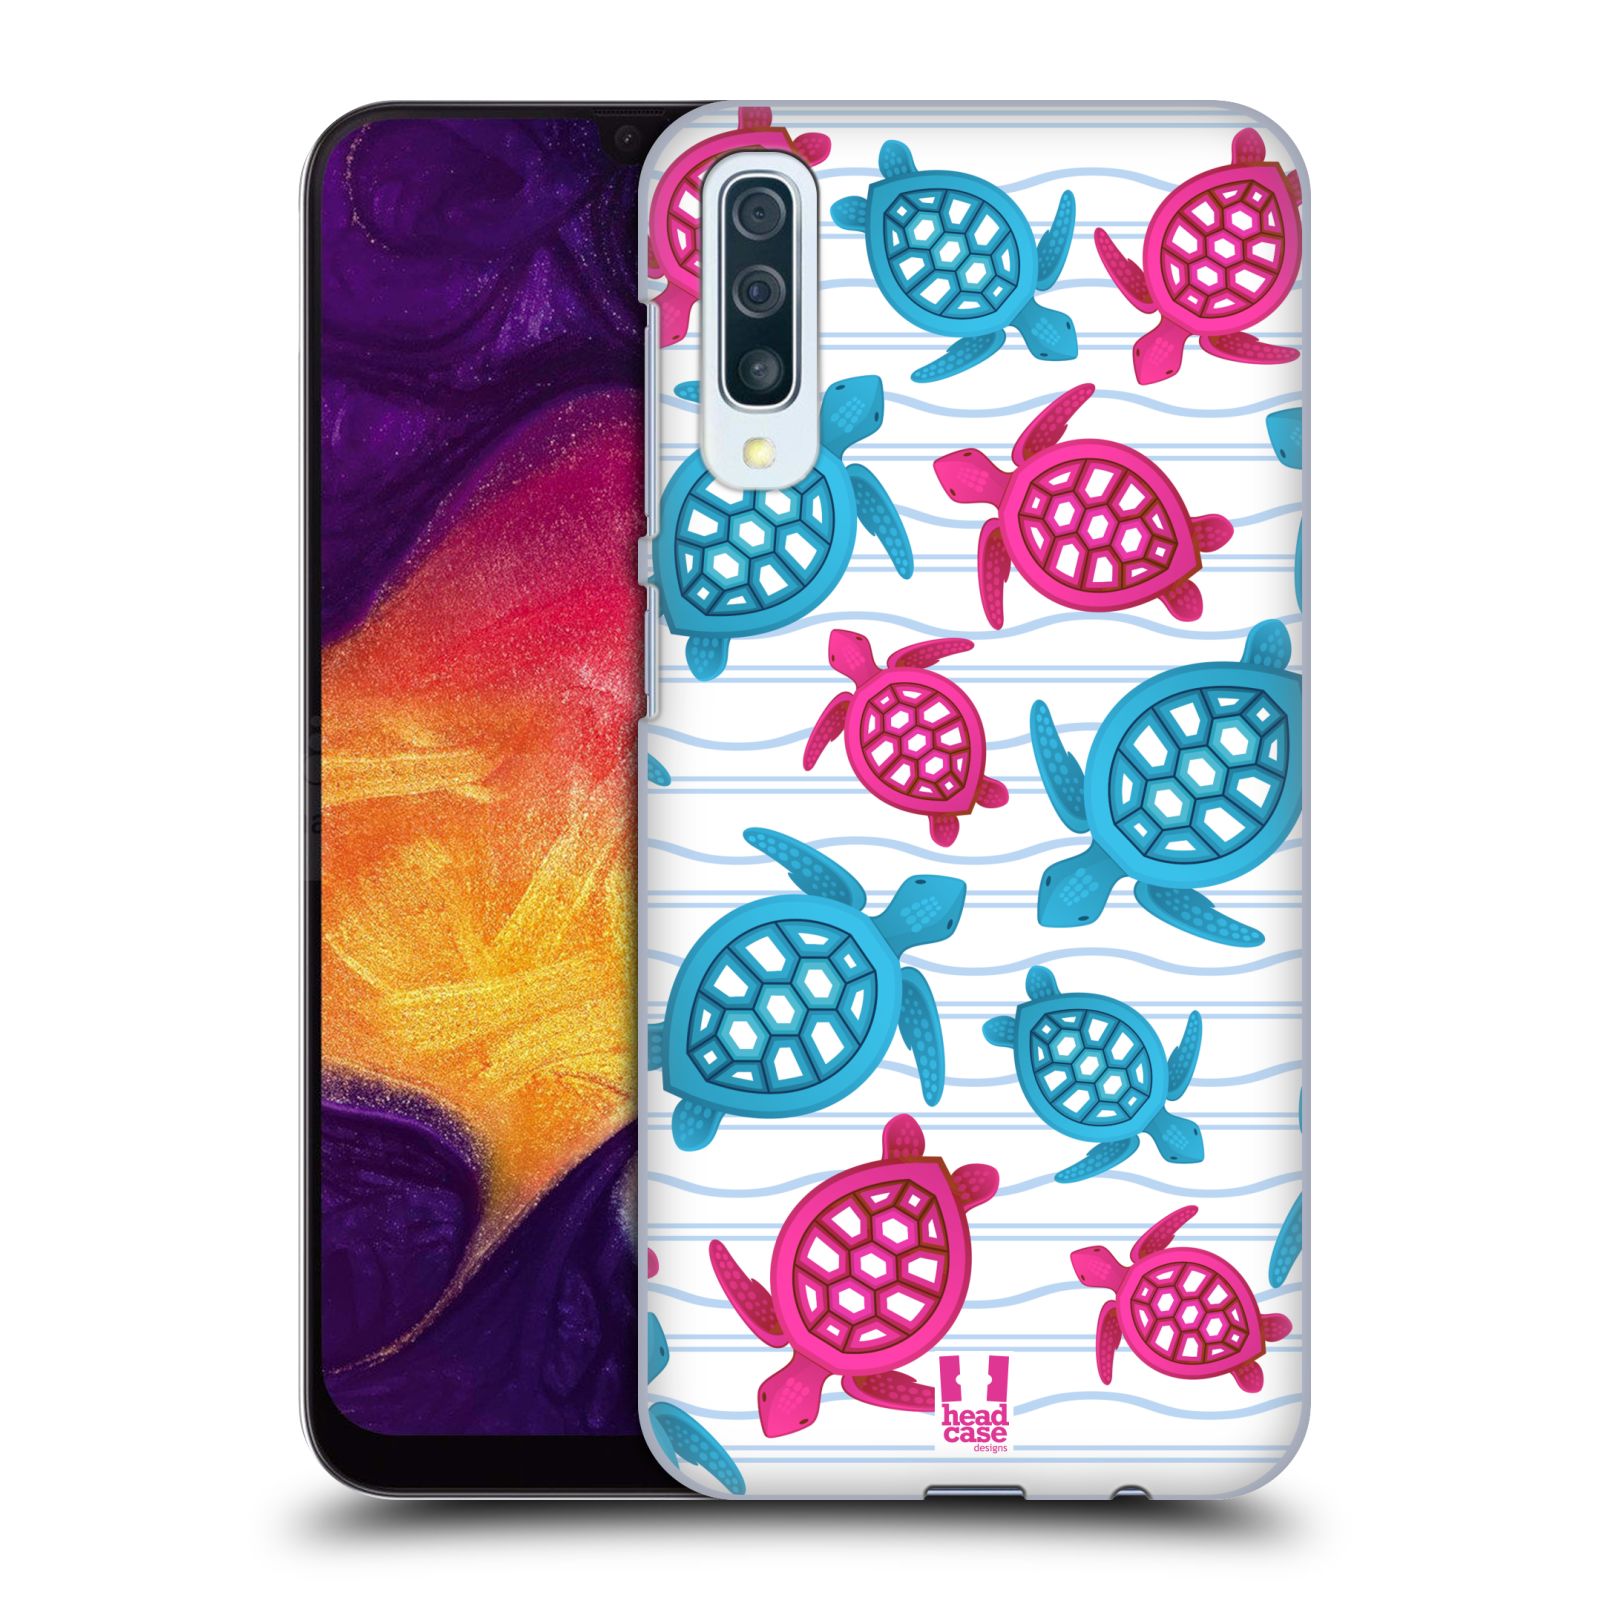 Zadní obal pro mobil Samsung Galaxy A50 / A30s - HEAD CASE - kreslený mořský vzor želvičky